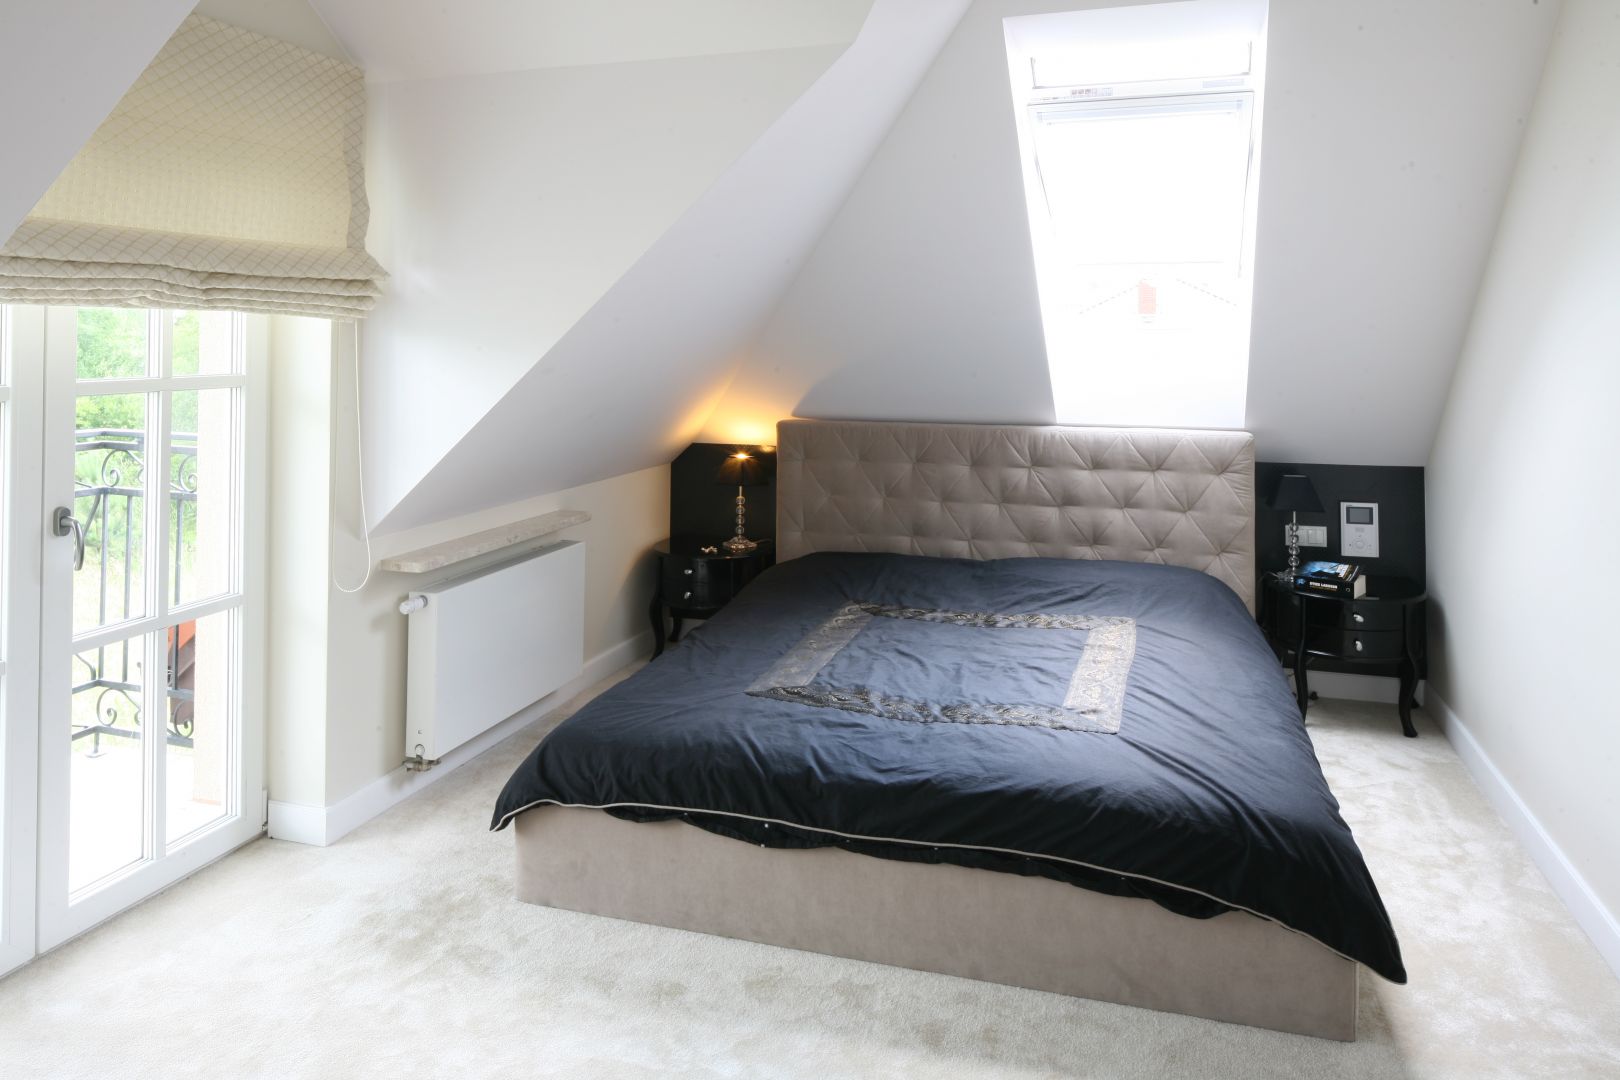 Tapicerowane łóżko z zagłówkiem ociepla białą, minimalistyczną sypialnię. Ciekawym elementem wnętrza są stylizowane stoliki nocne. Projekt: Katarzyna Merta-Korzniakow Fot. Bartosz Jarosz